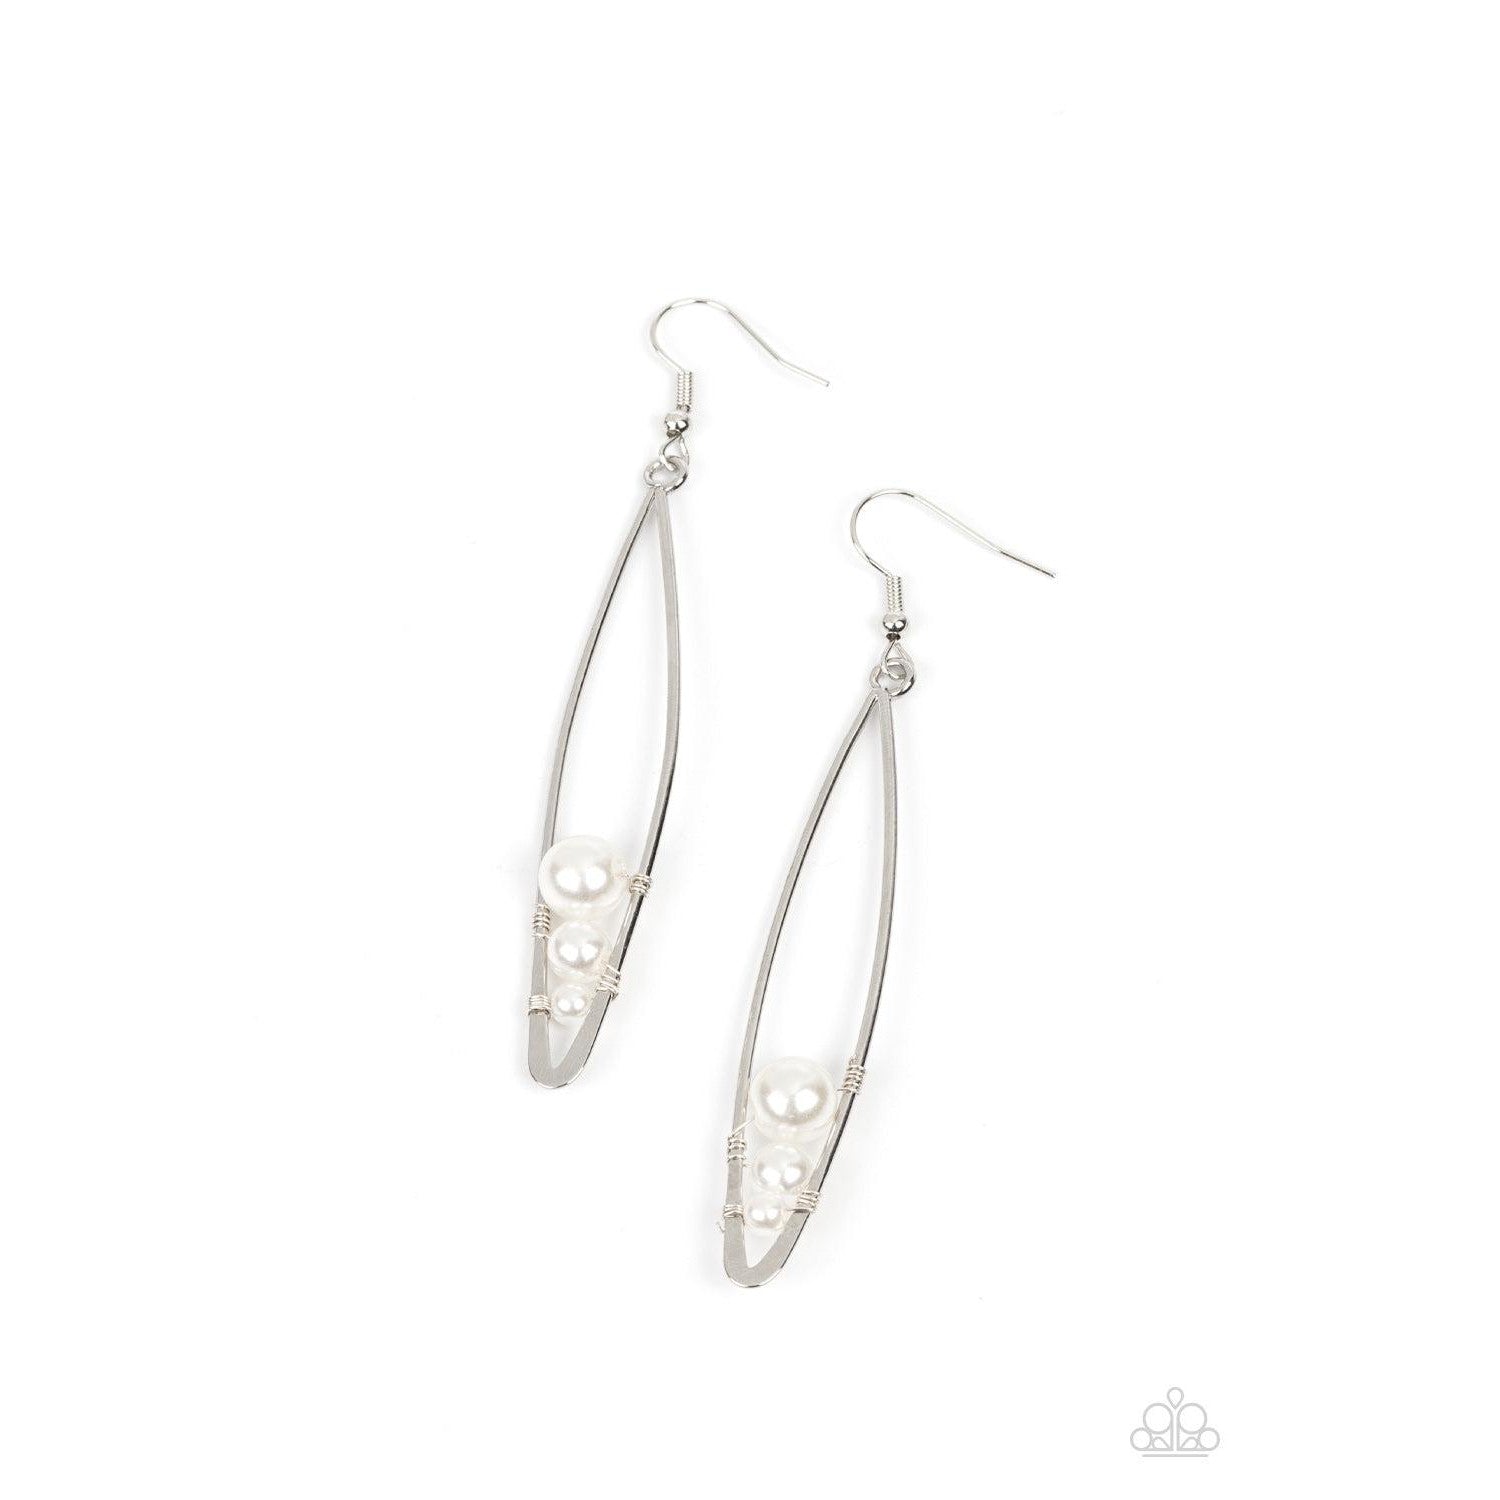 Atlantic Allure - White Pearl Earrings - Bling by Danielle Baker